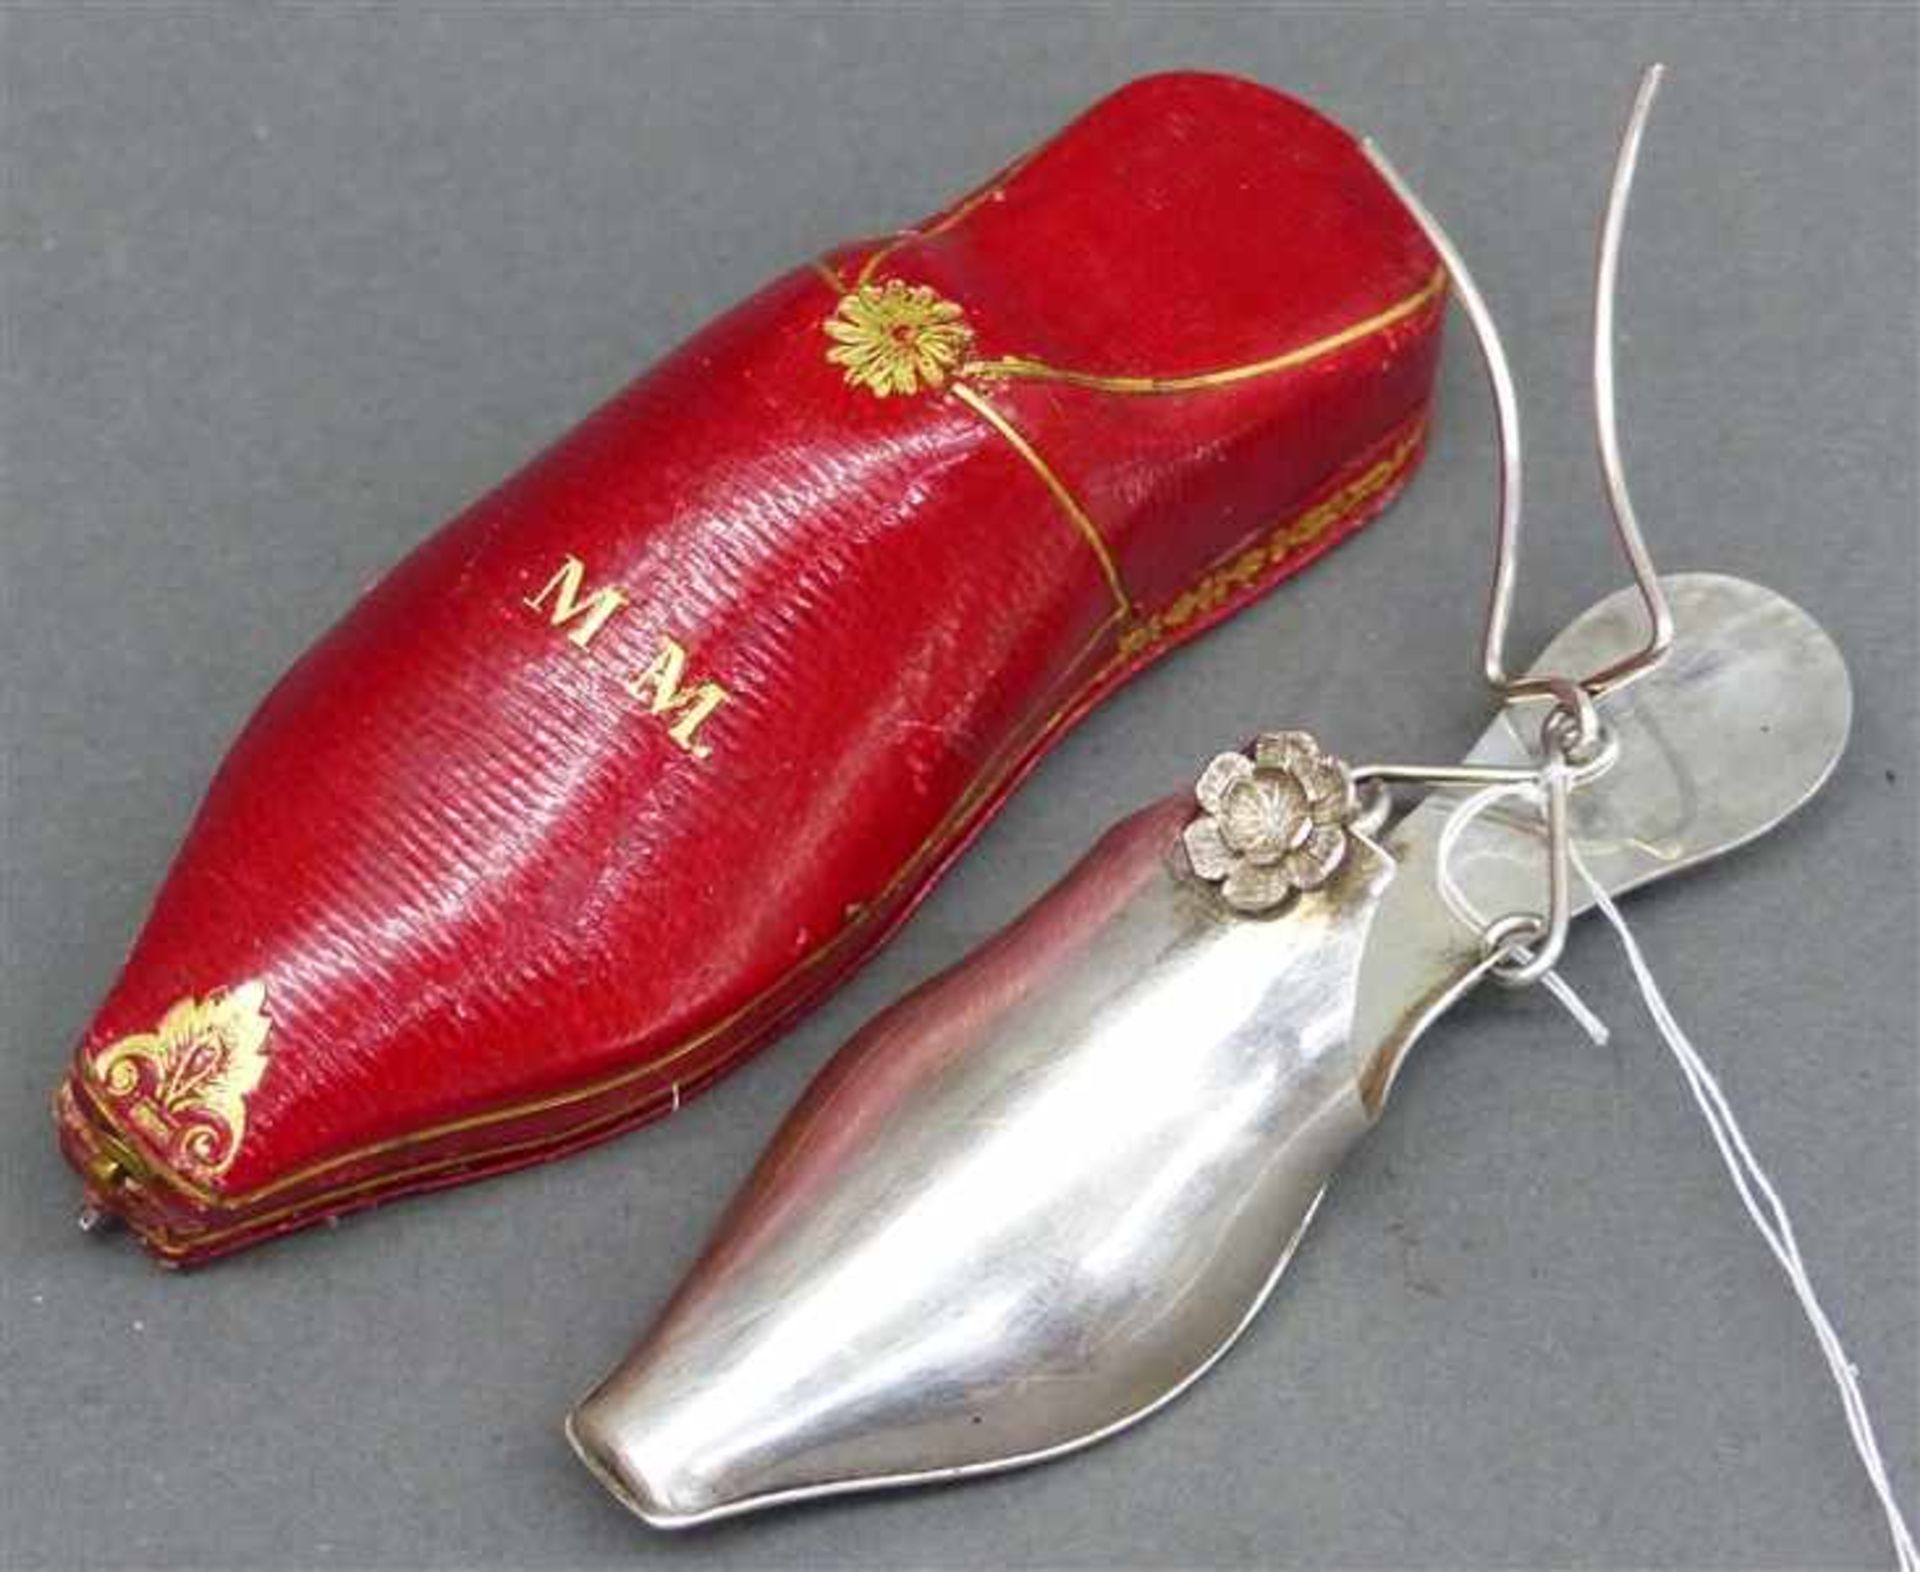 Tropfsieb Silber, in Form eines Schuhes, um 1900, in roten Lederetui, ca. 18 g schwer, l 8,5 cm,